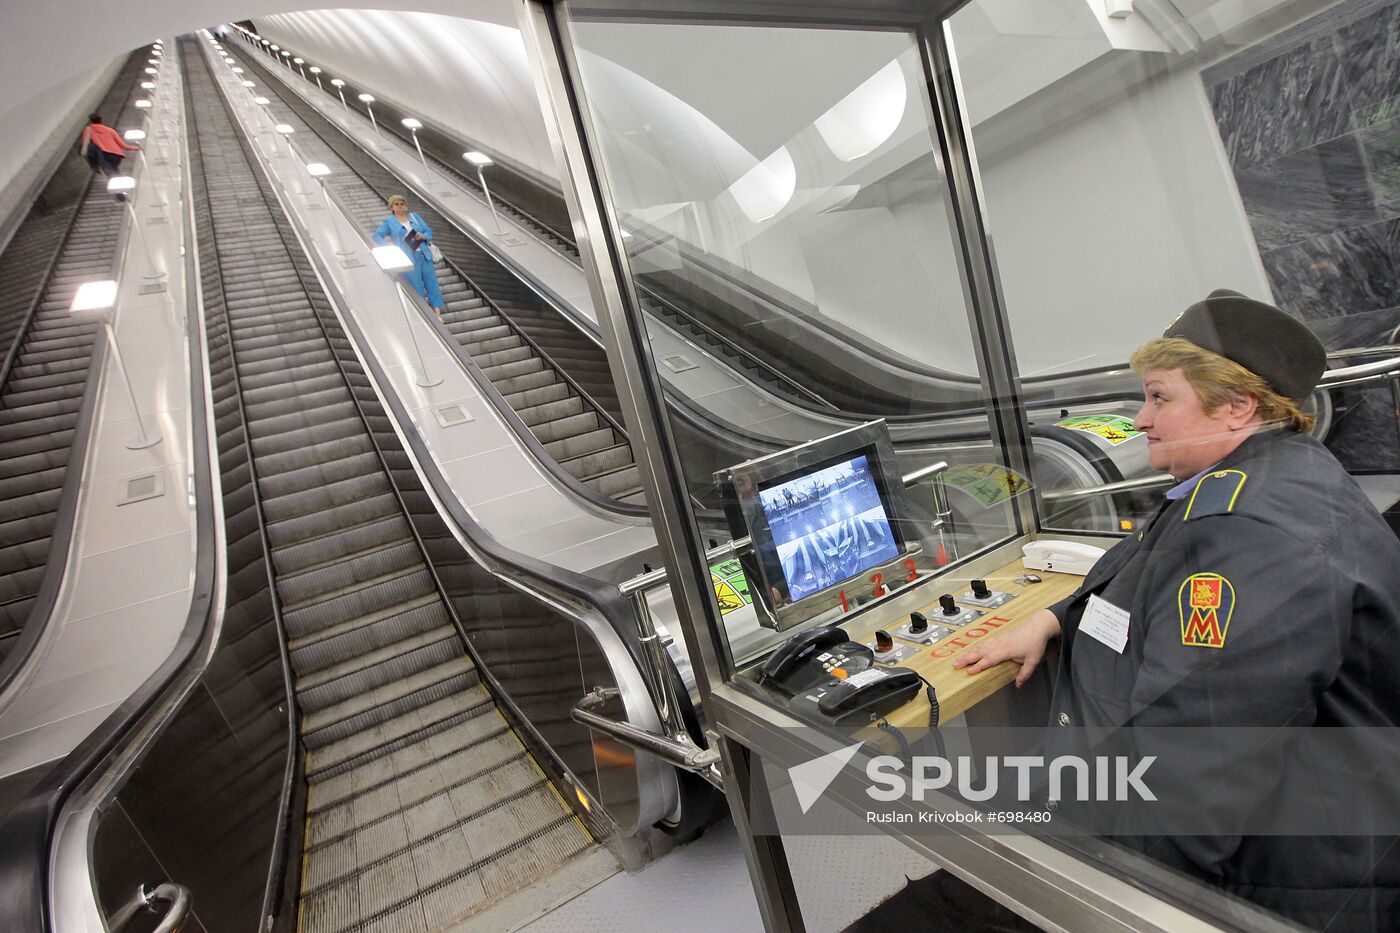 Moscow Metro's Dostoyevskaya station escalator